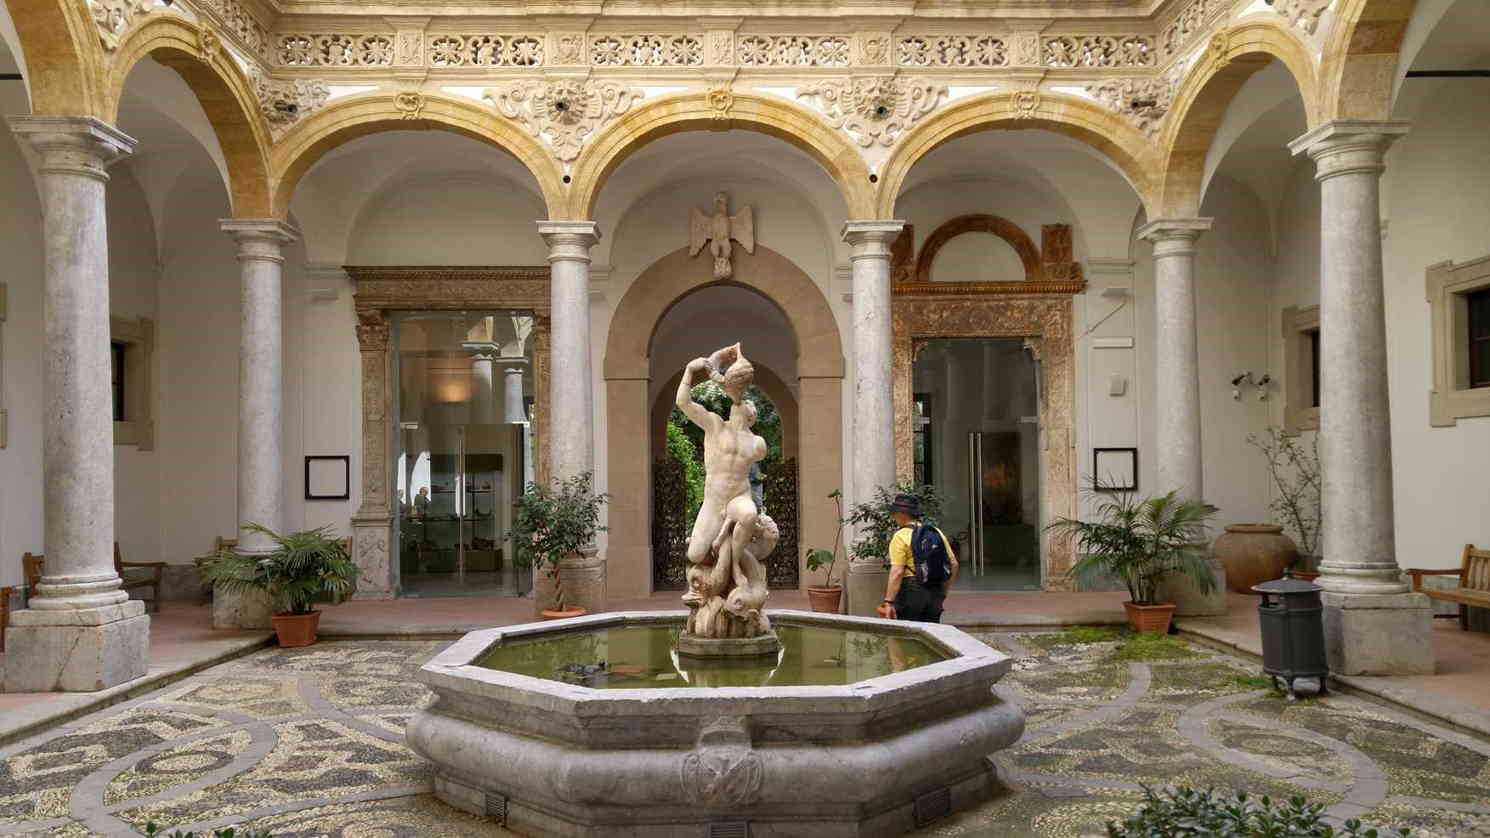 Museo Arqueológico Antonio Salinas - Claustro entrada y Fuente adornada con Tritón